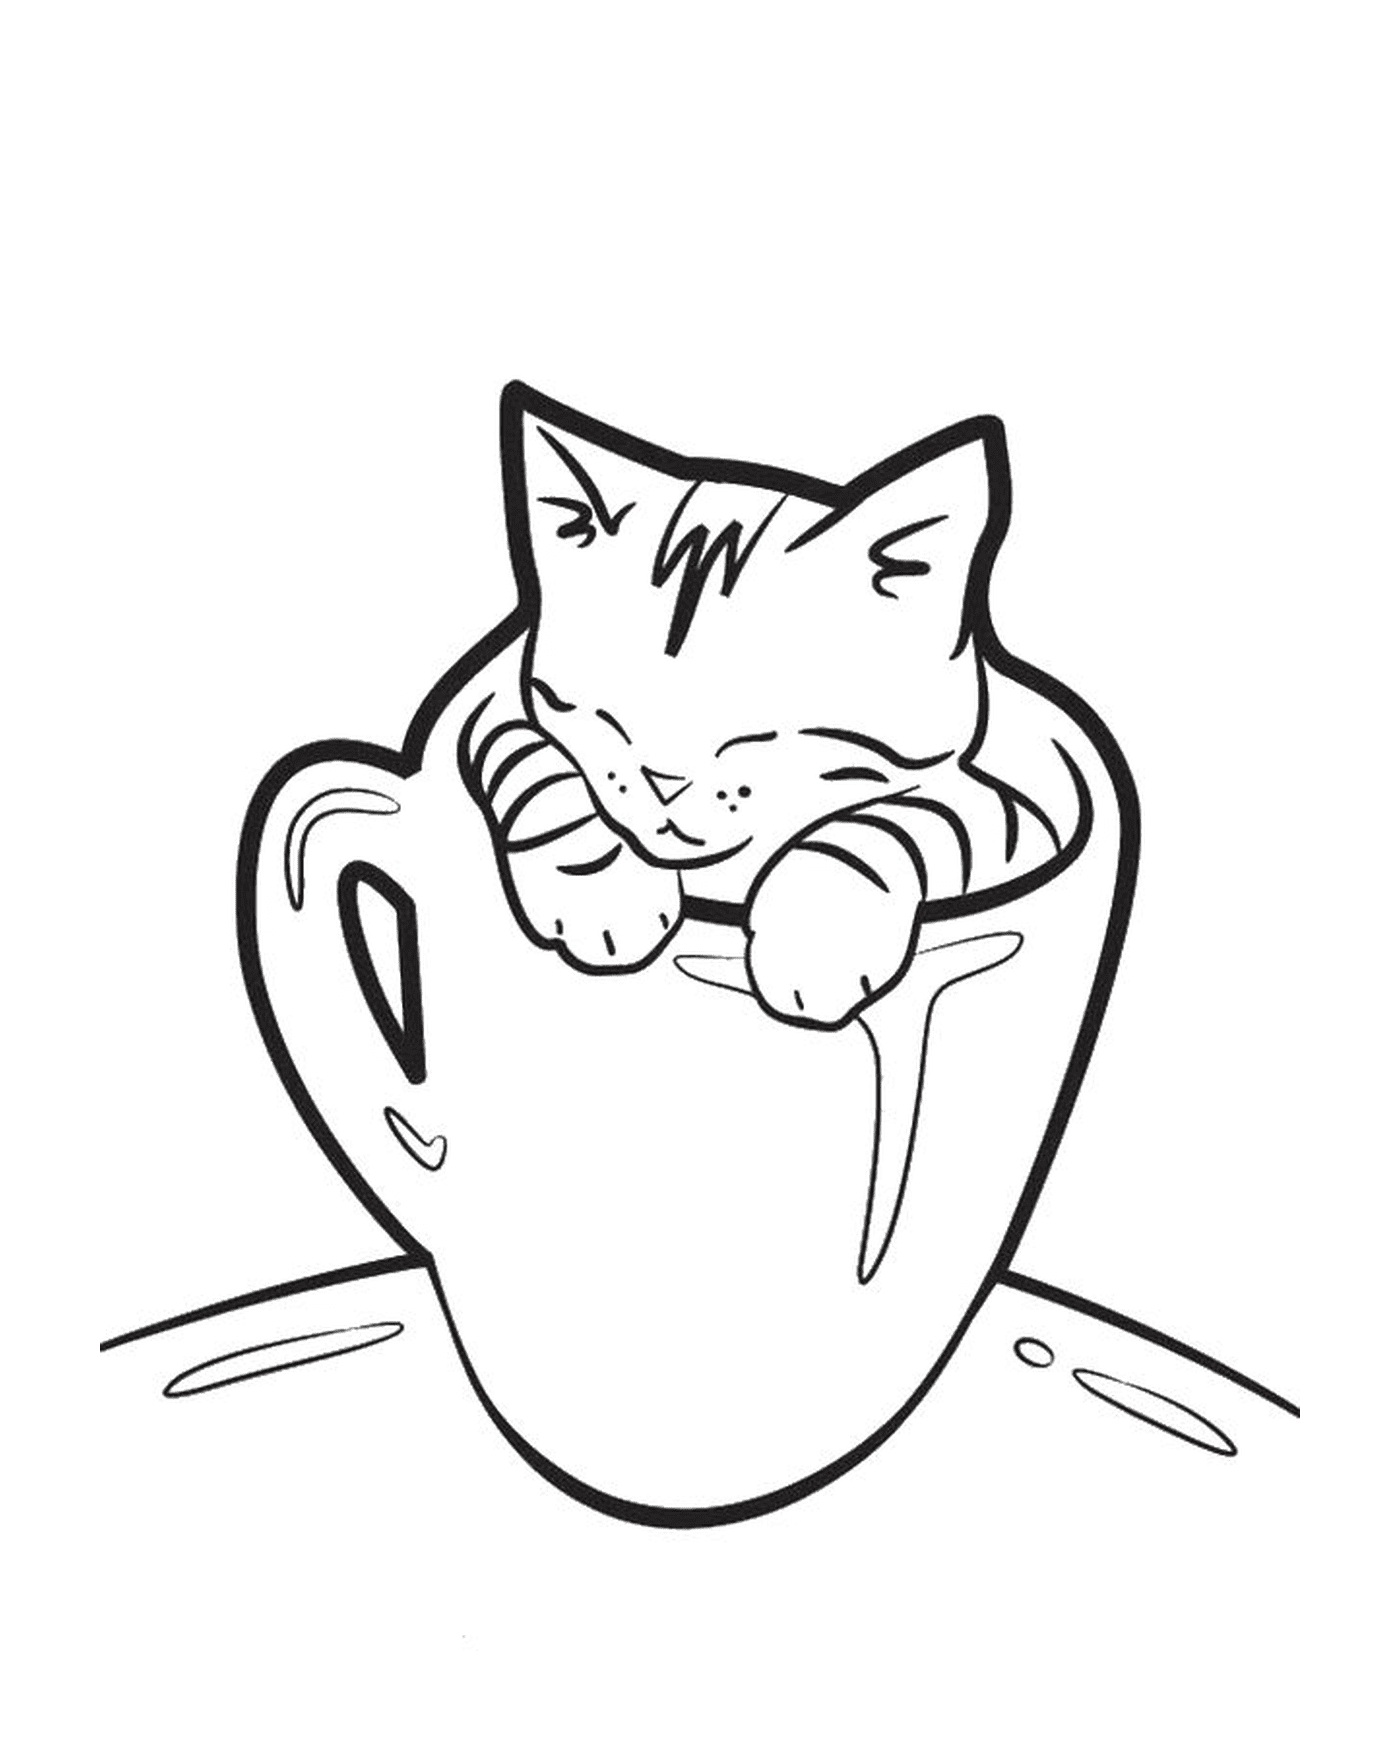  Uma xícara de café com um gato engraçado 